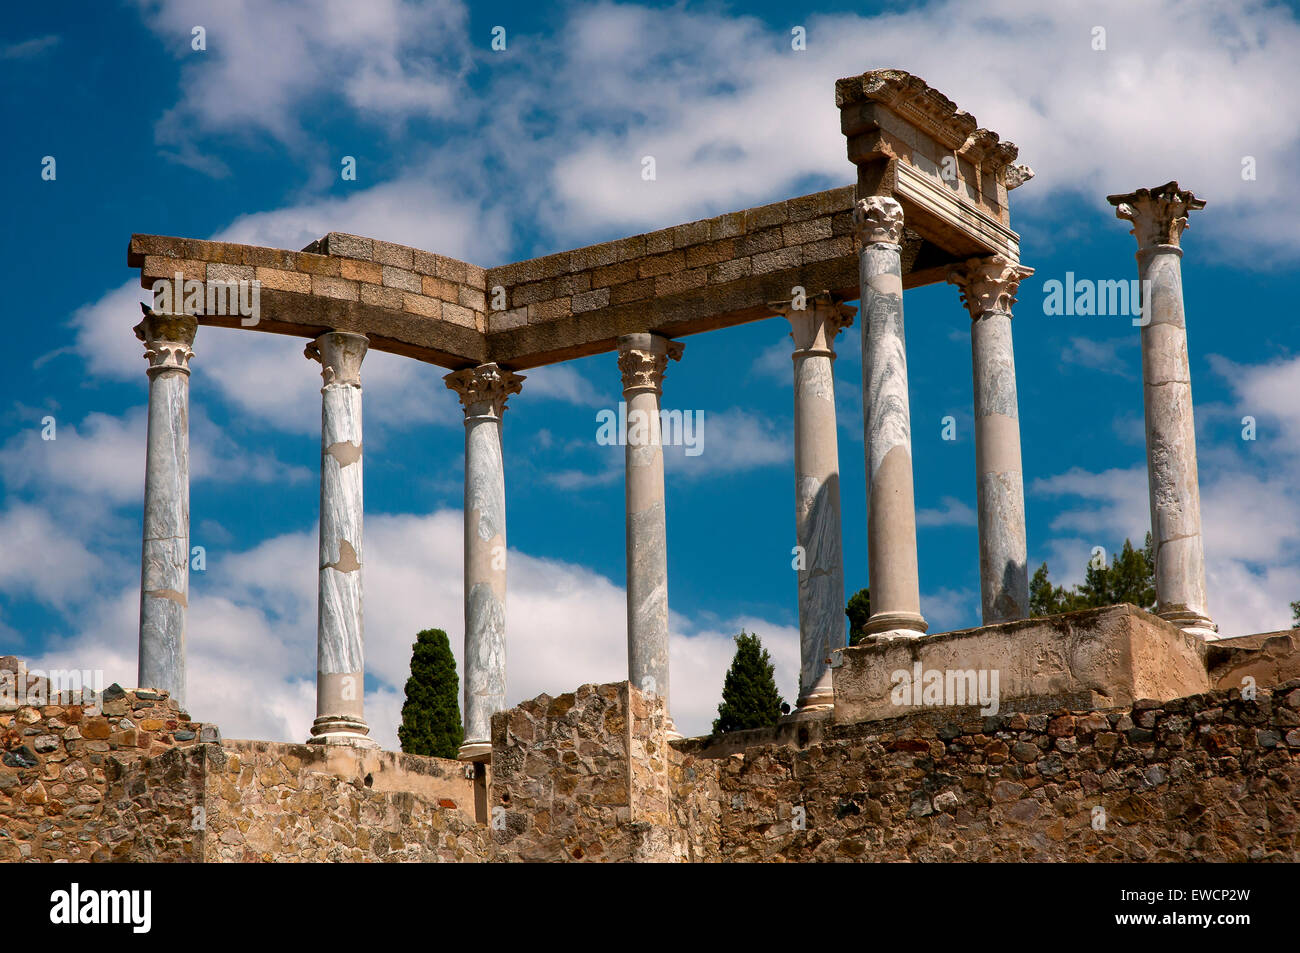 Théâtre romain- détail des colonnes, Merida, Badajoz province, région de l'Estrémadure, Espagne, Europe Banque D'Images